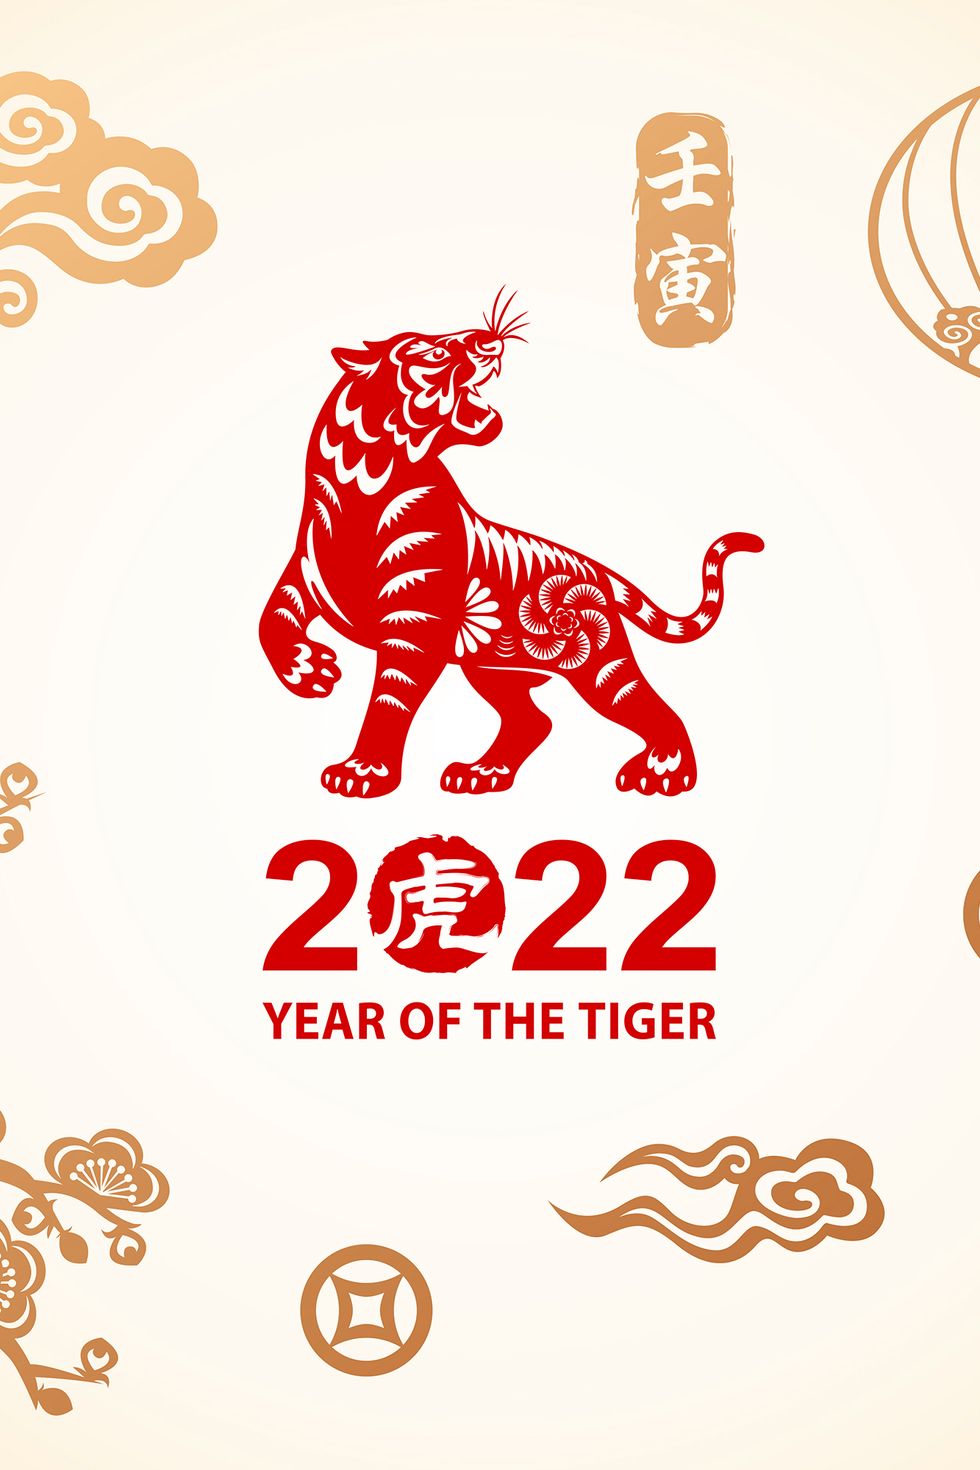 Horóscopo chino: Qué te depara el año del Tigre de Agua según tu signo